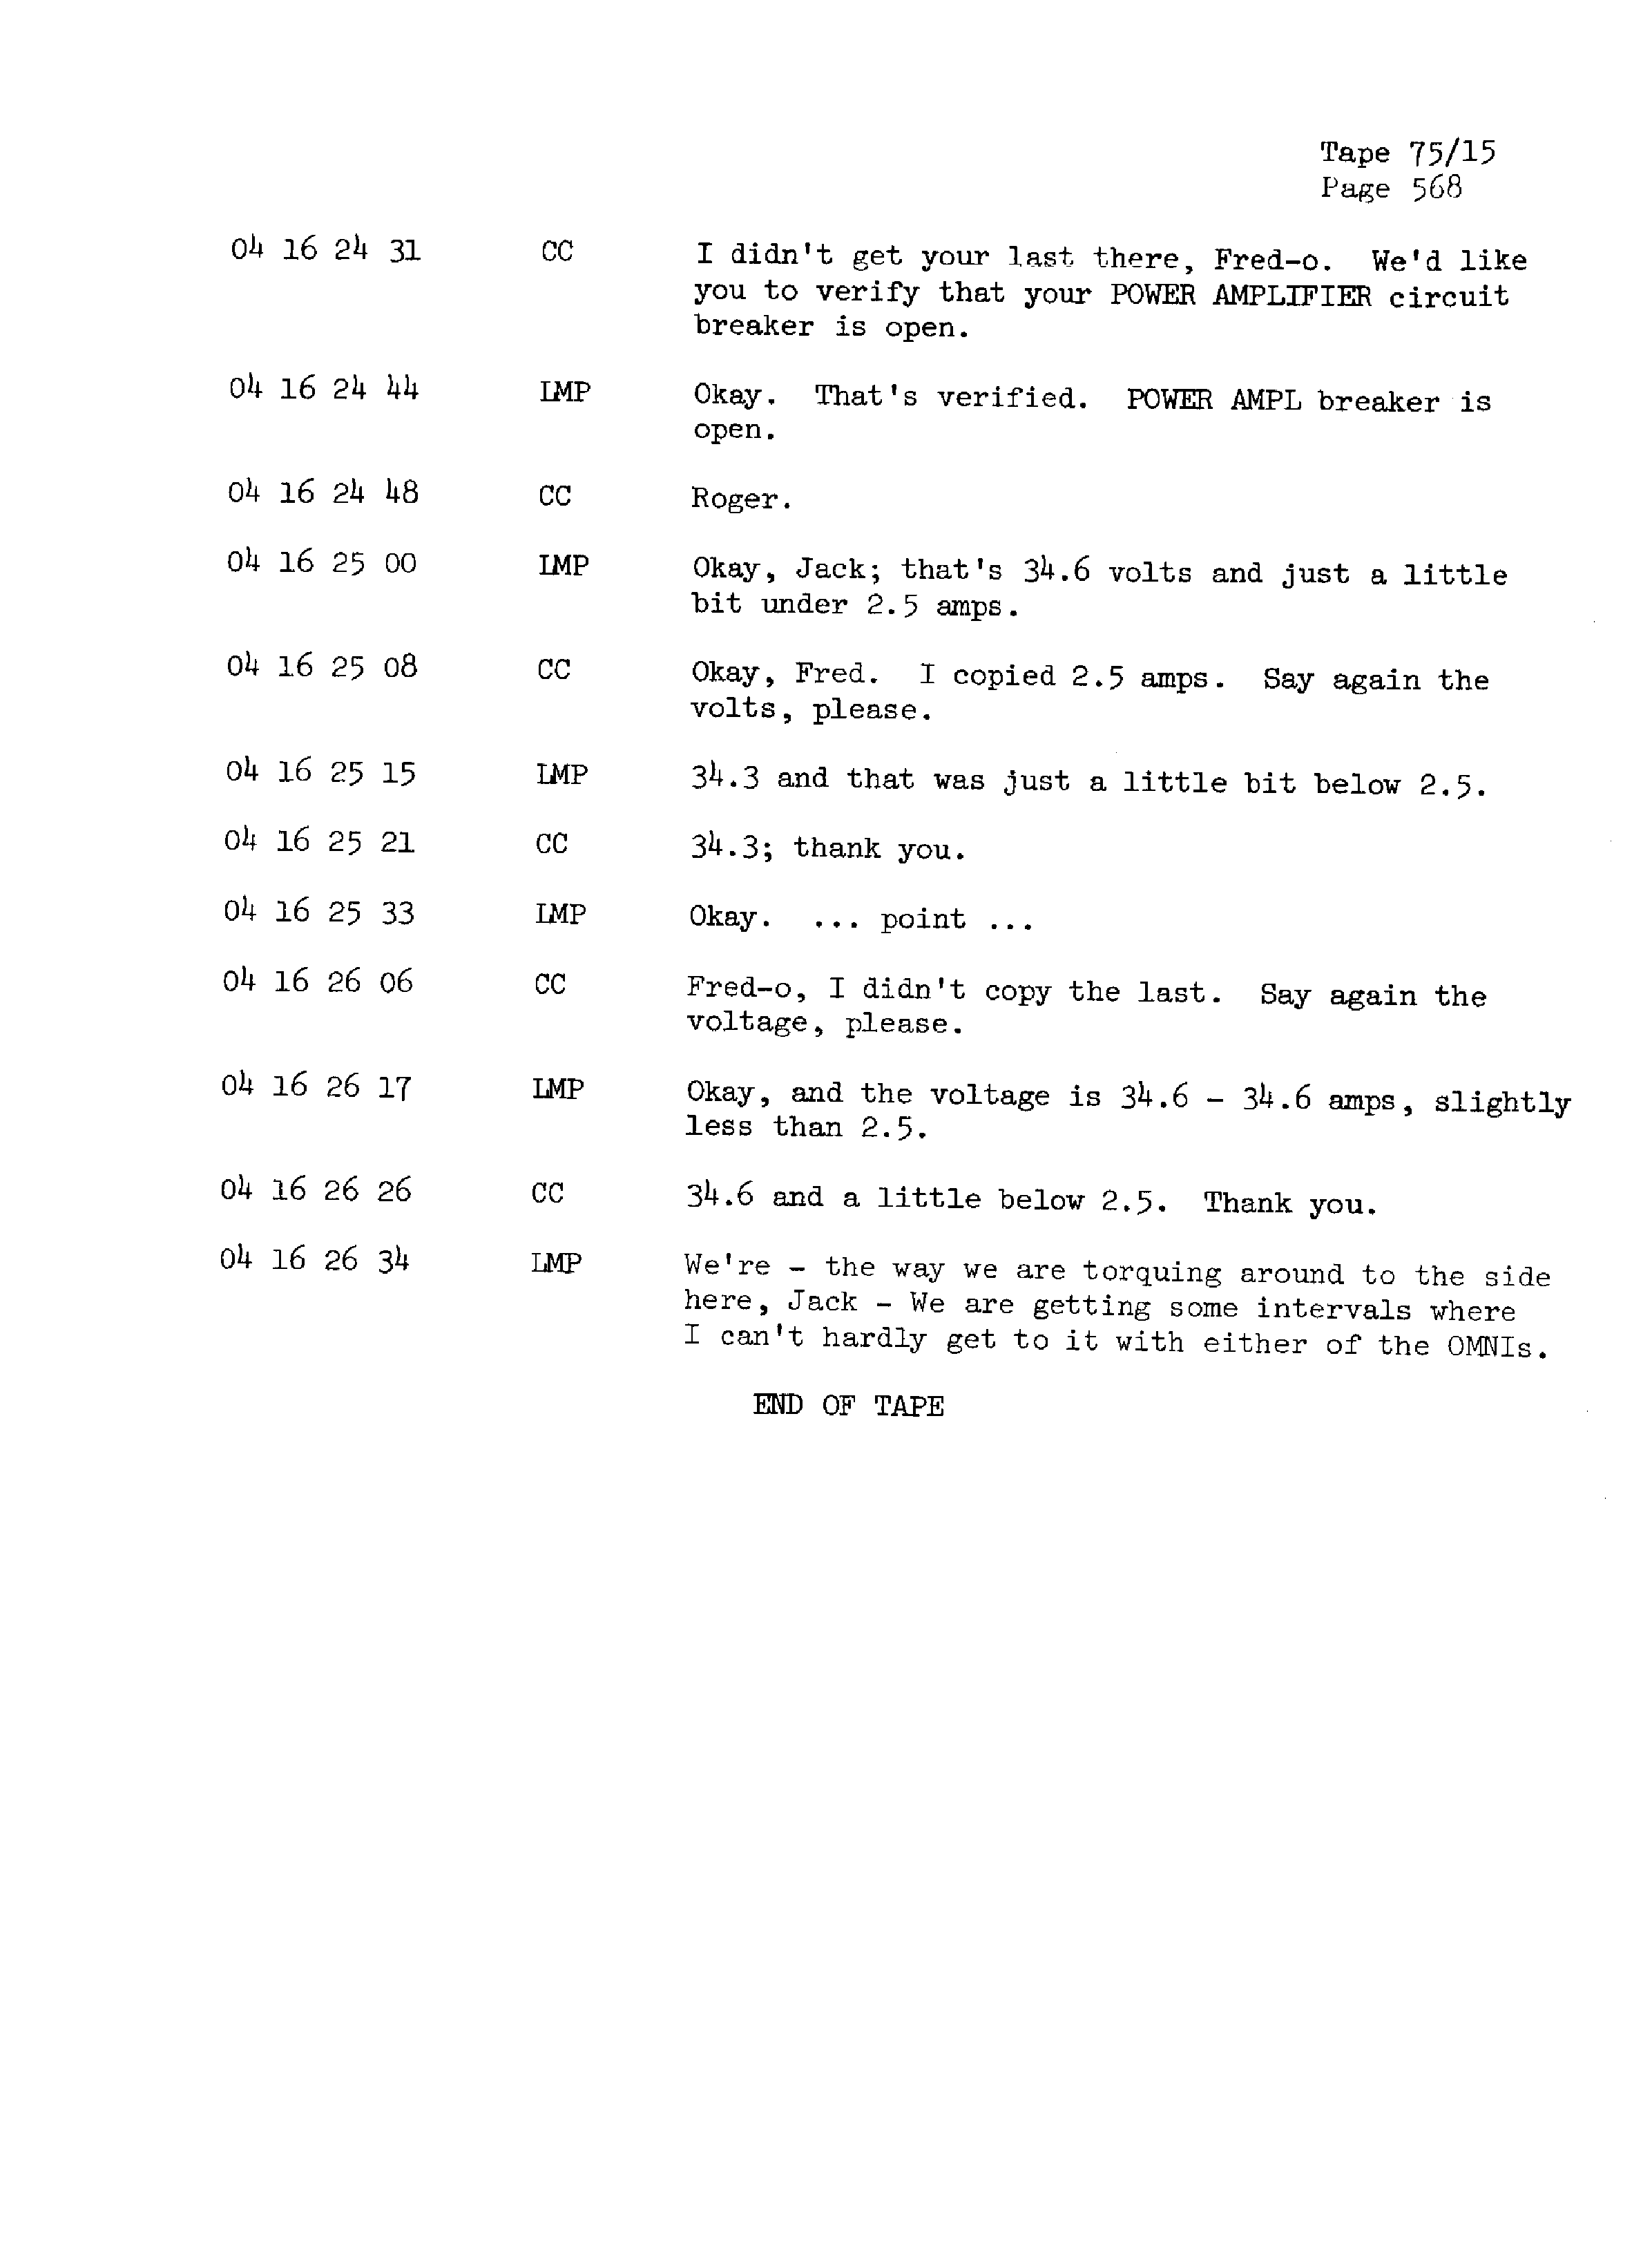 Page 575 of Apollo 13’s original transcript